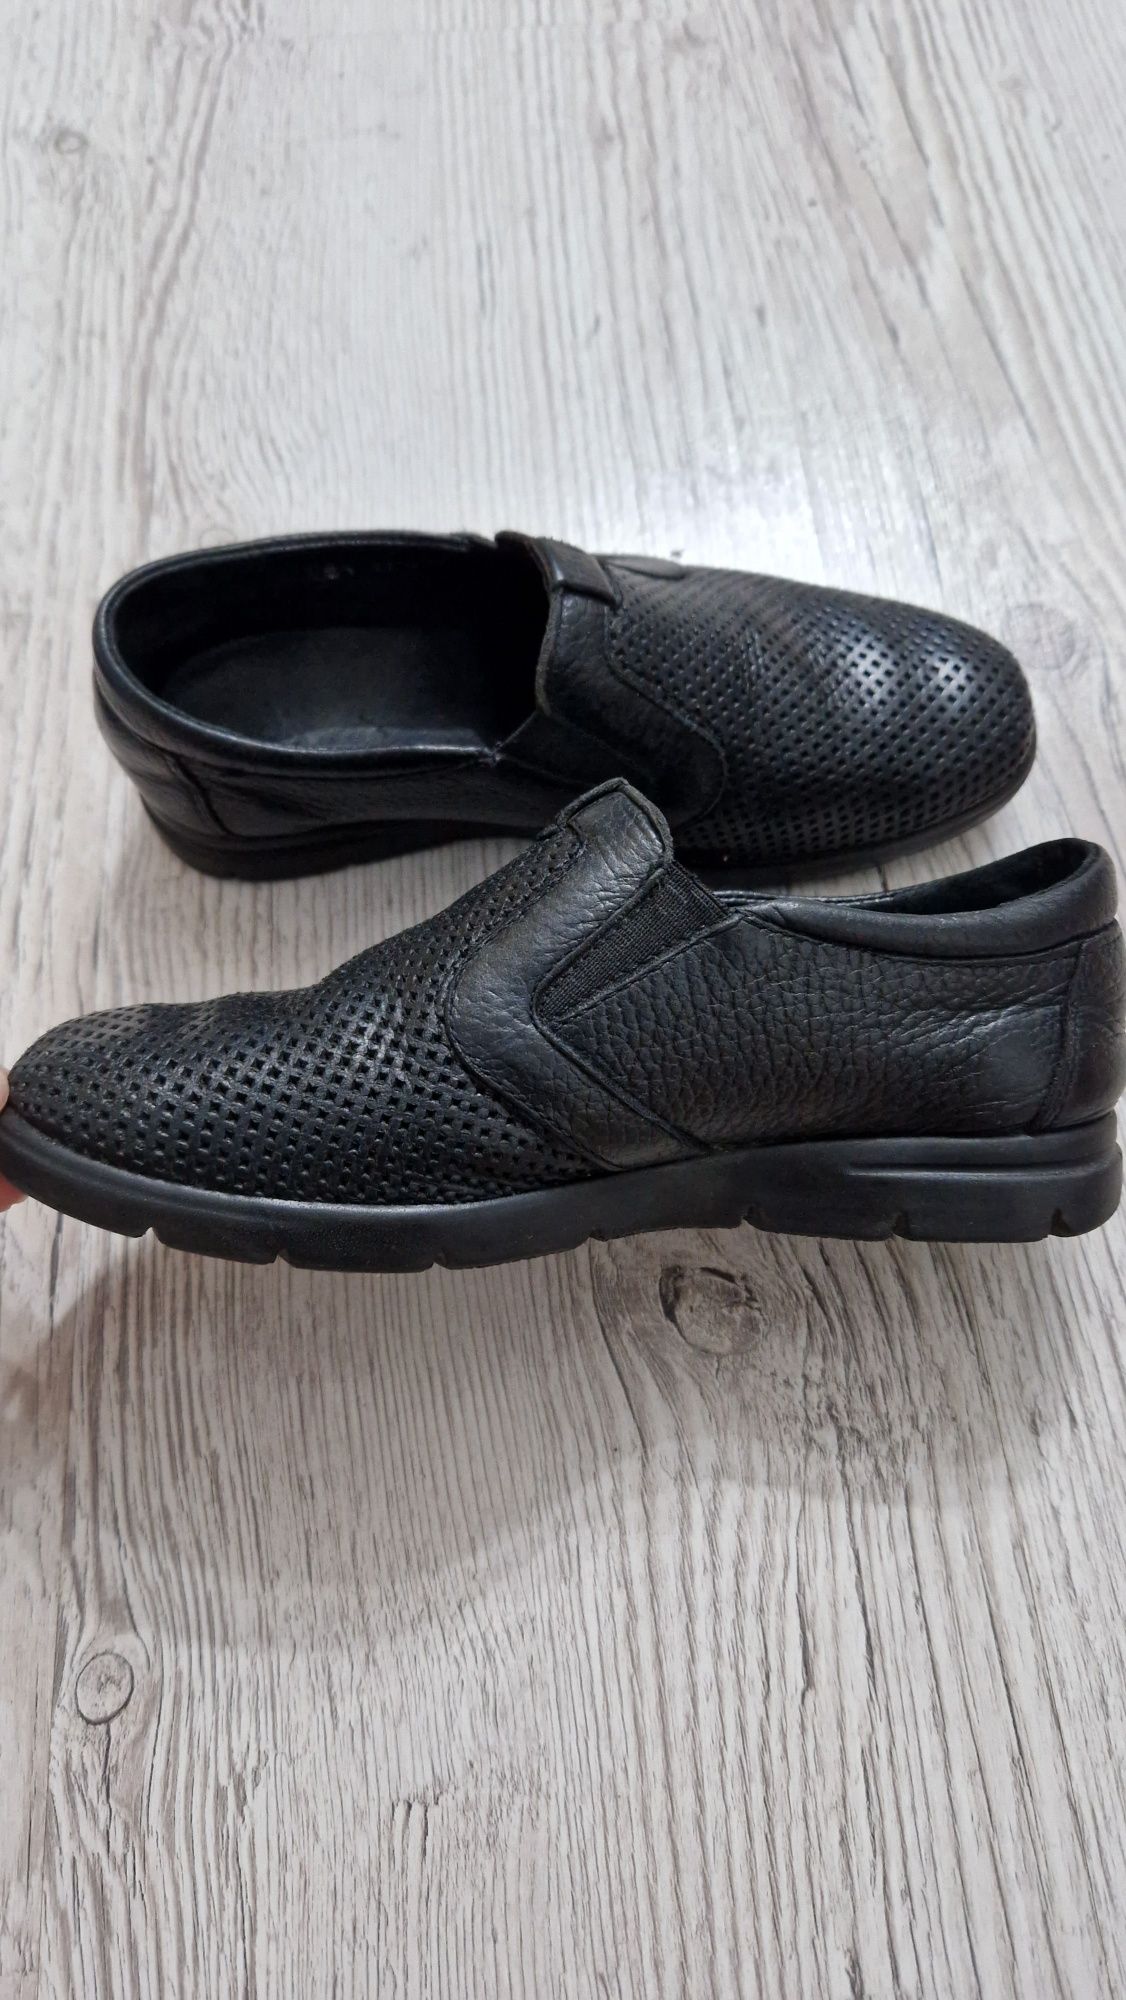 Продам туфли кожаные школьные для мальчика unichel, размер 31